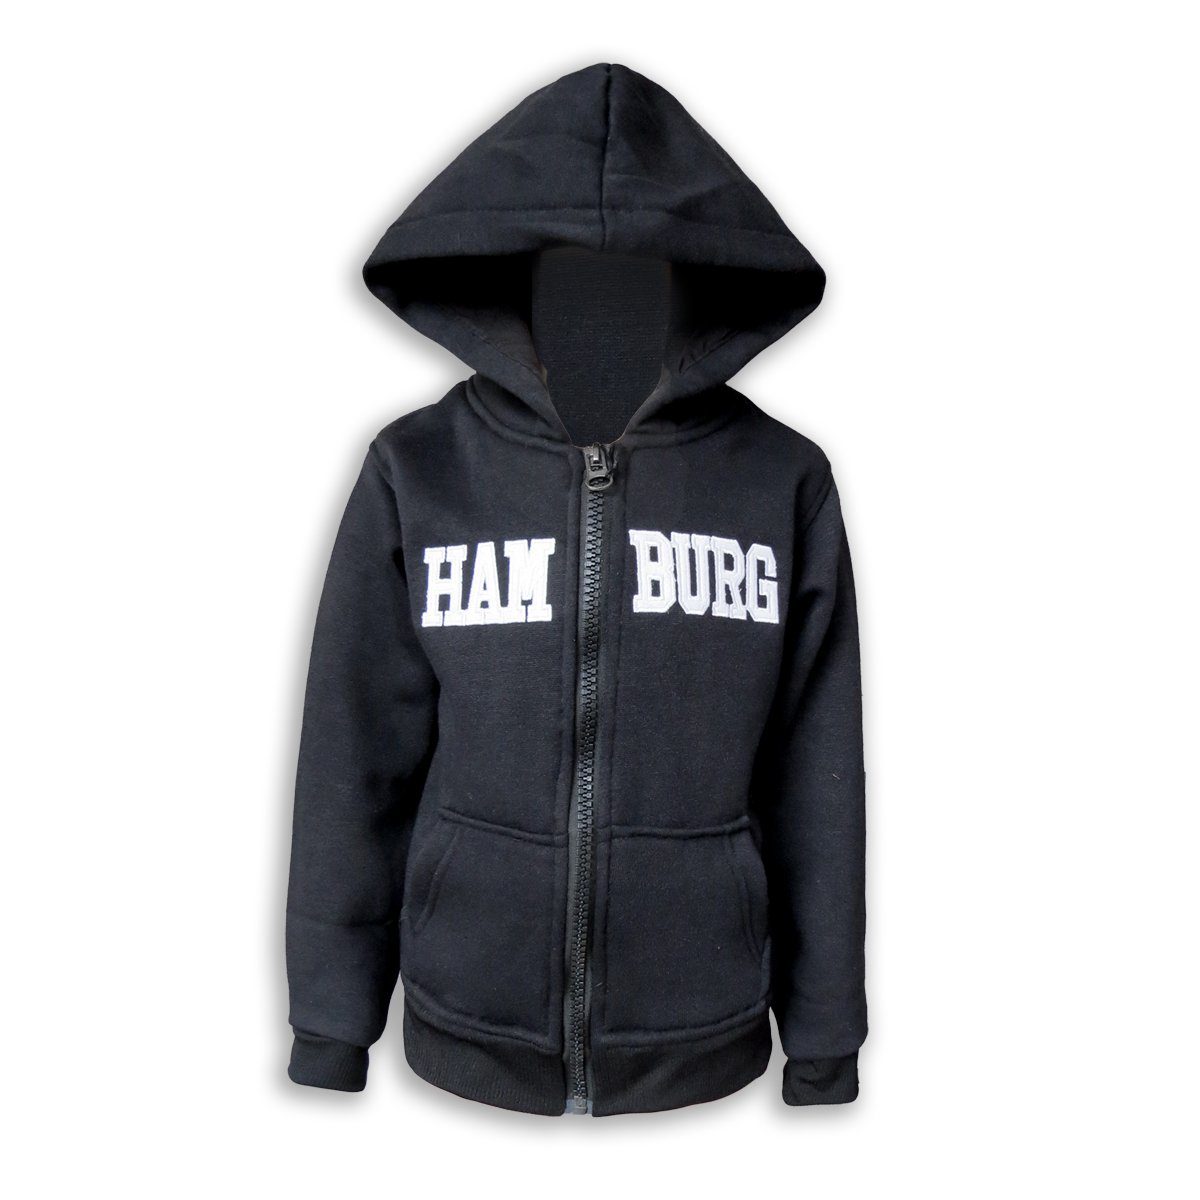 Sonia Originelli T-Shirt Sweatjacke "Hamburg" Kinder unifarben Jacke Hoodie bestickt schwarz